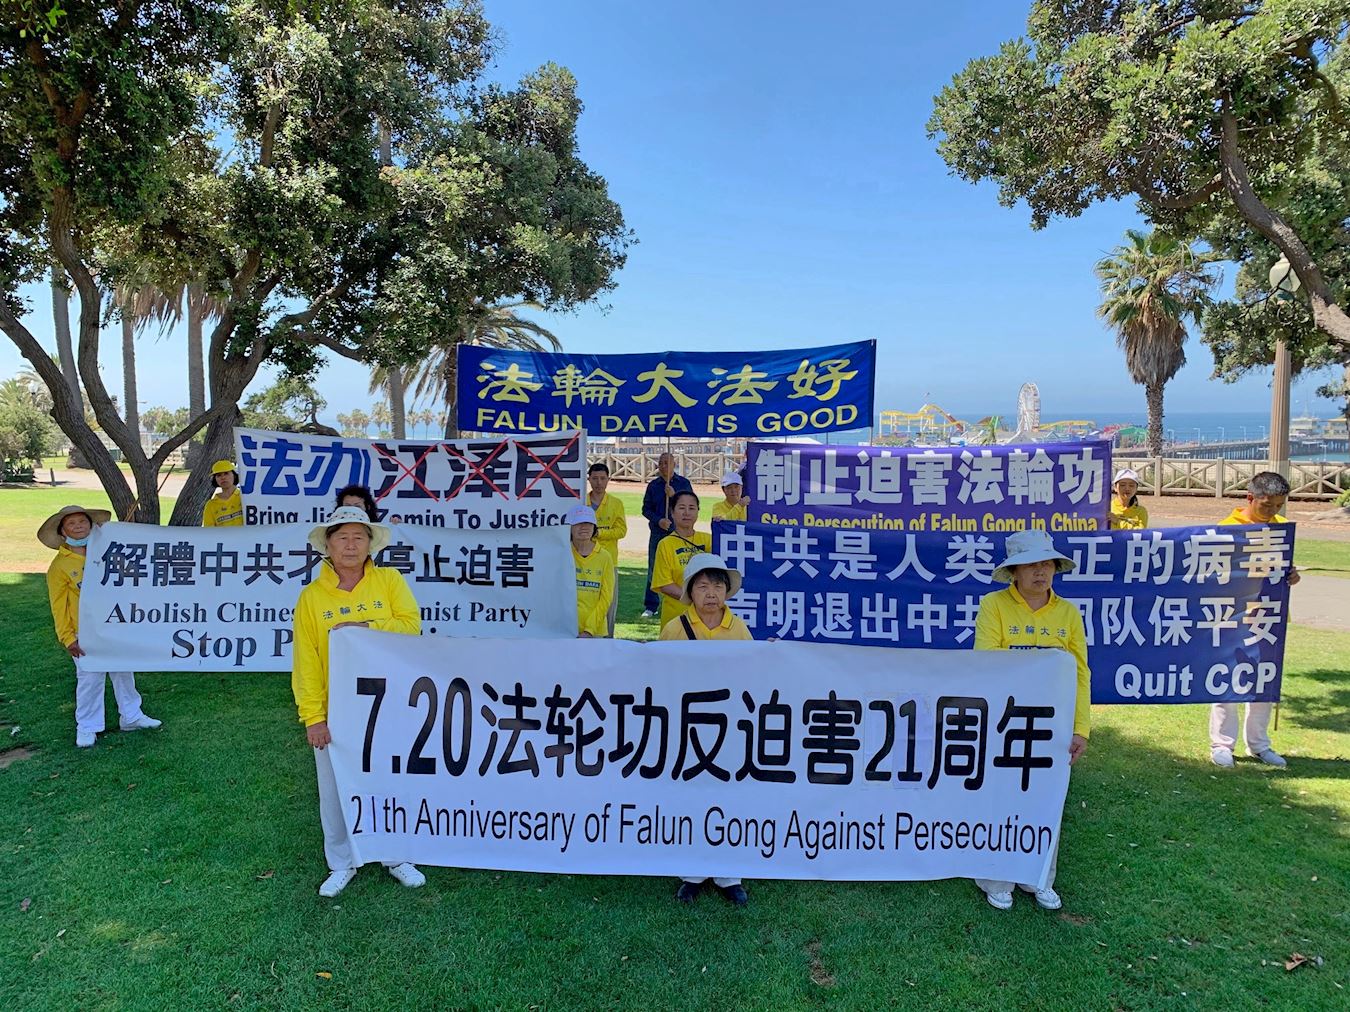 Image for article Los Angeles : 21 ans de résistance pacifique au régime chinois et de manifestation contre la persécution de la croyance